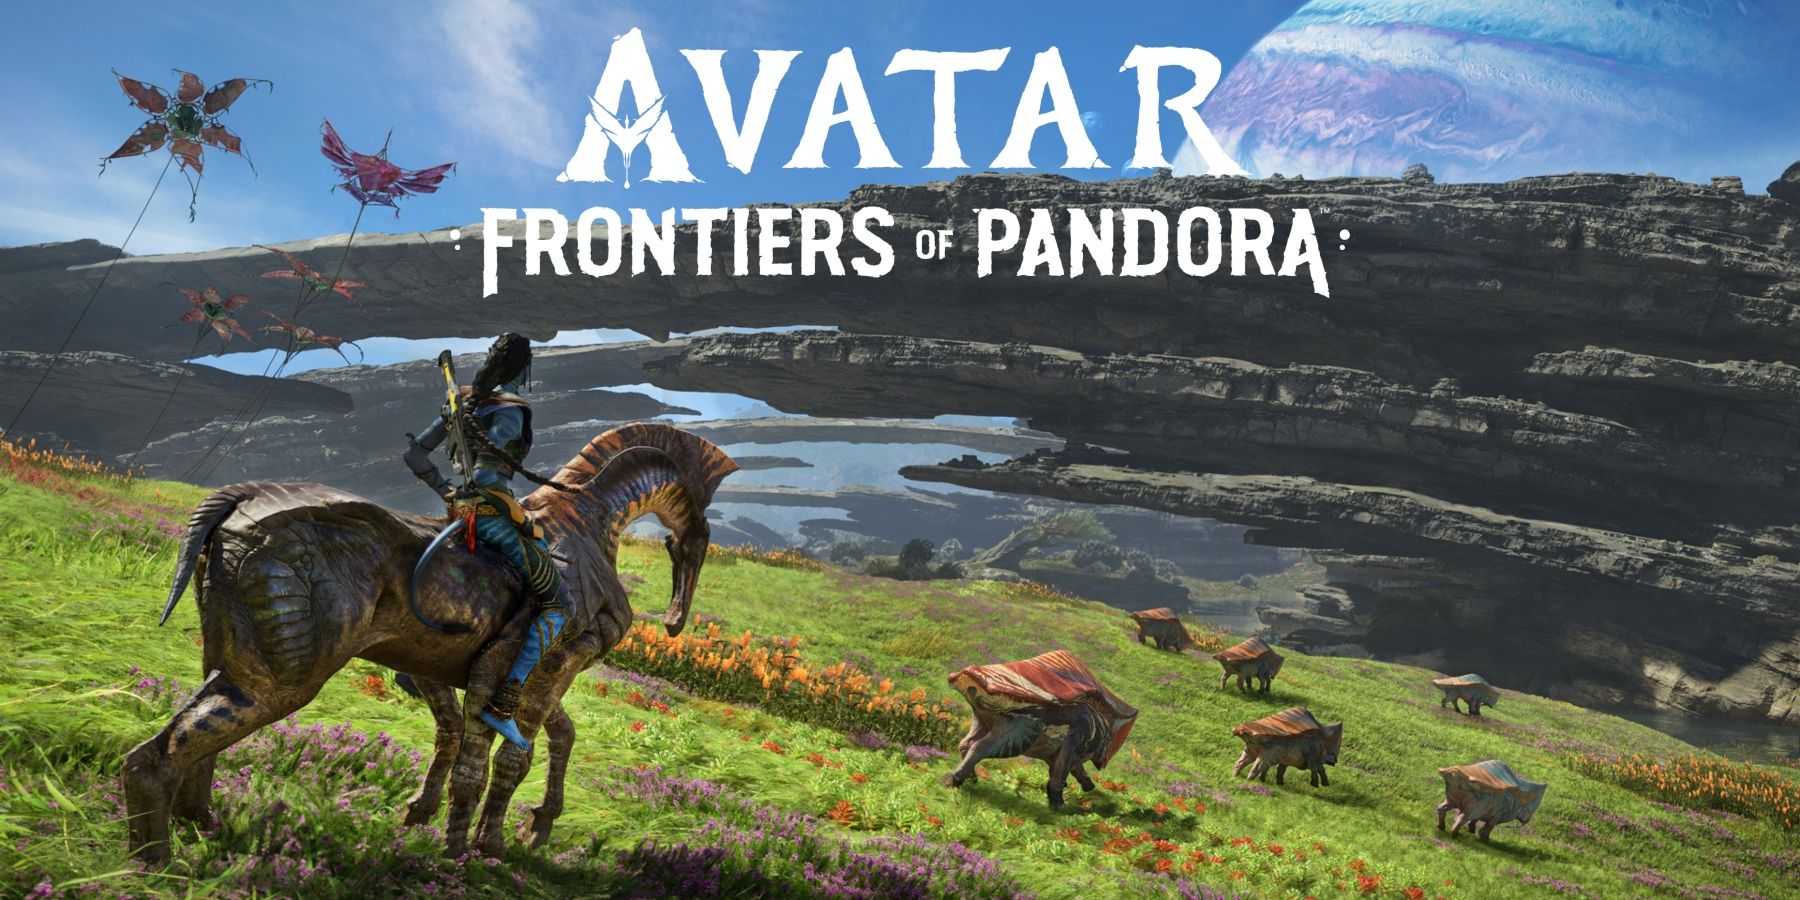 Frontiers of Pandora Direhorse